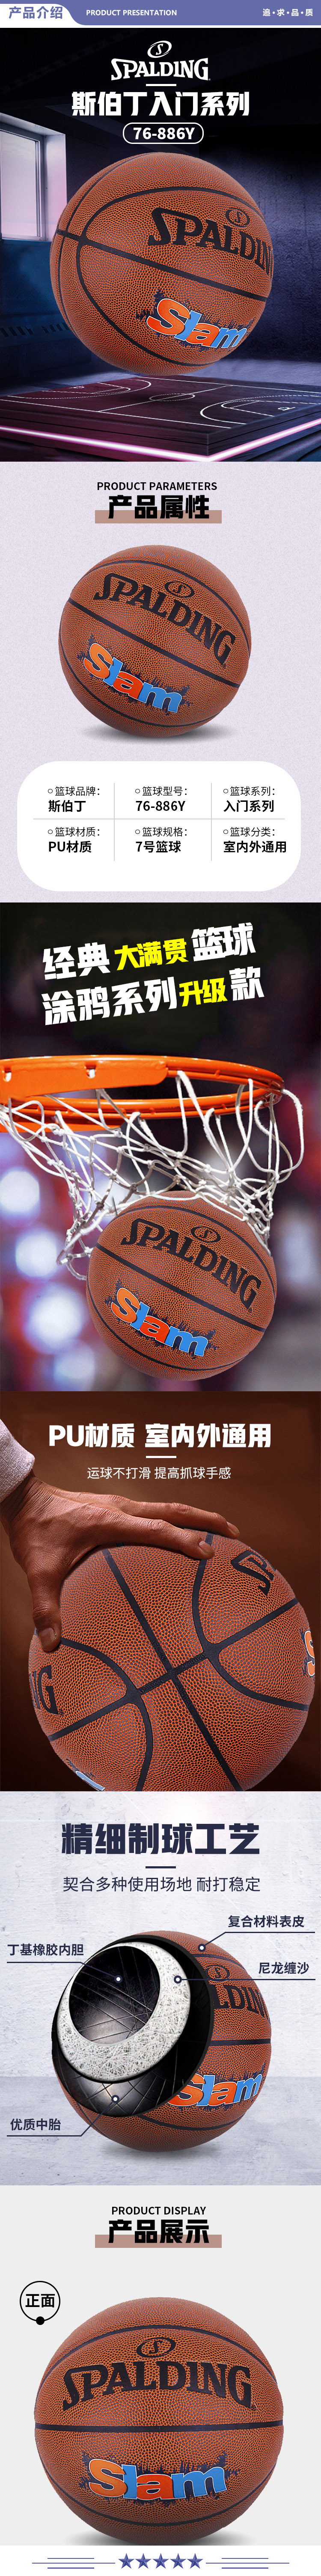 斯伯丁 76-886Y 经典大满贯篮球街头灌篮涂鸦系列升级款7号PU蓝球 2.jpg